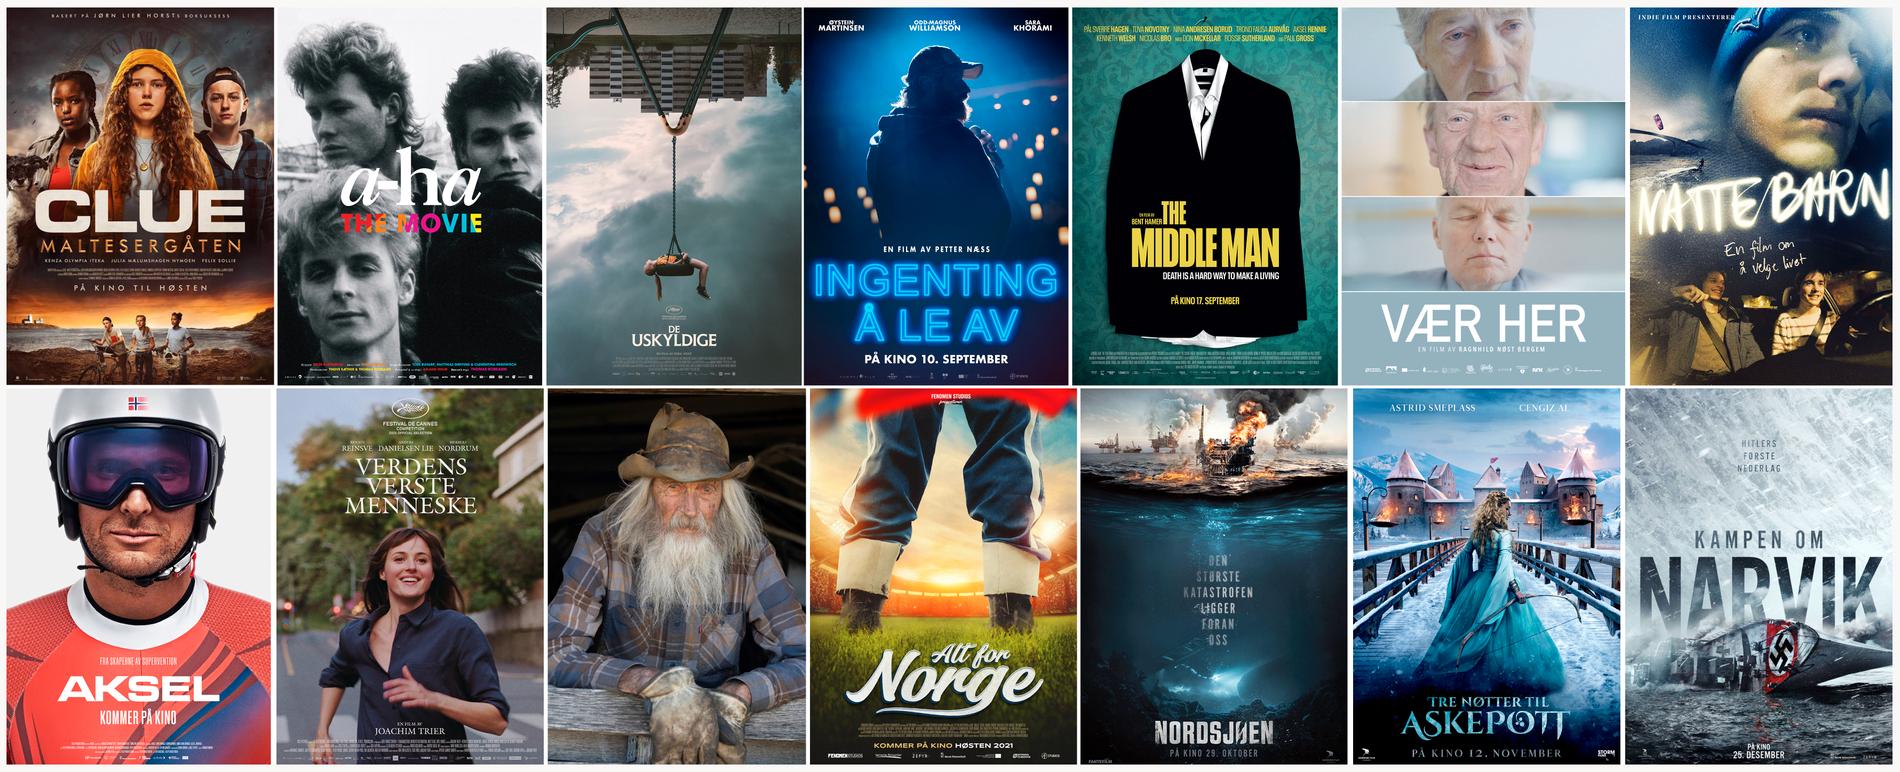 Dette knippet på 14 norske filmer blir å se på kinoene denne filmhøsten. 